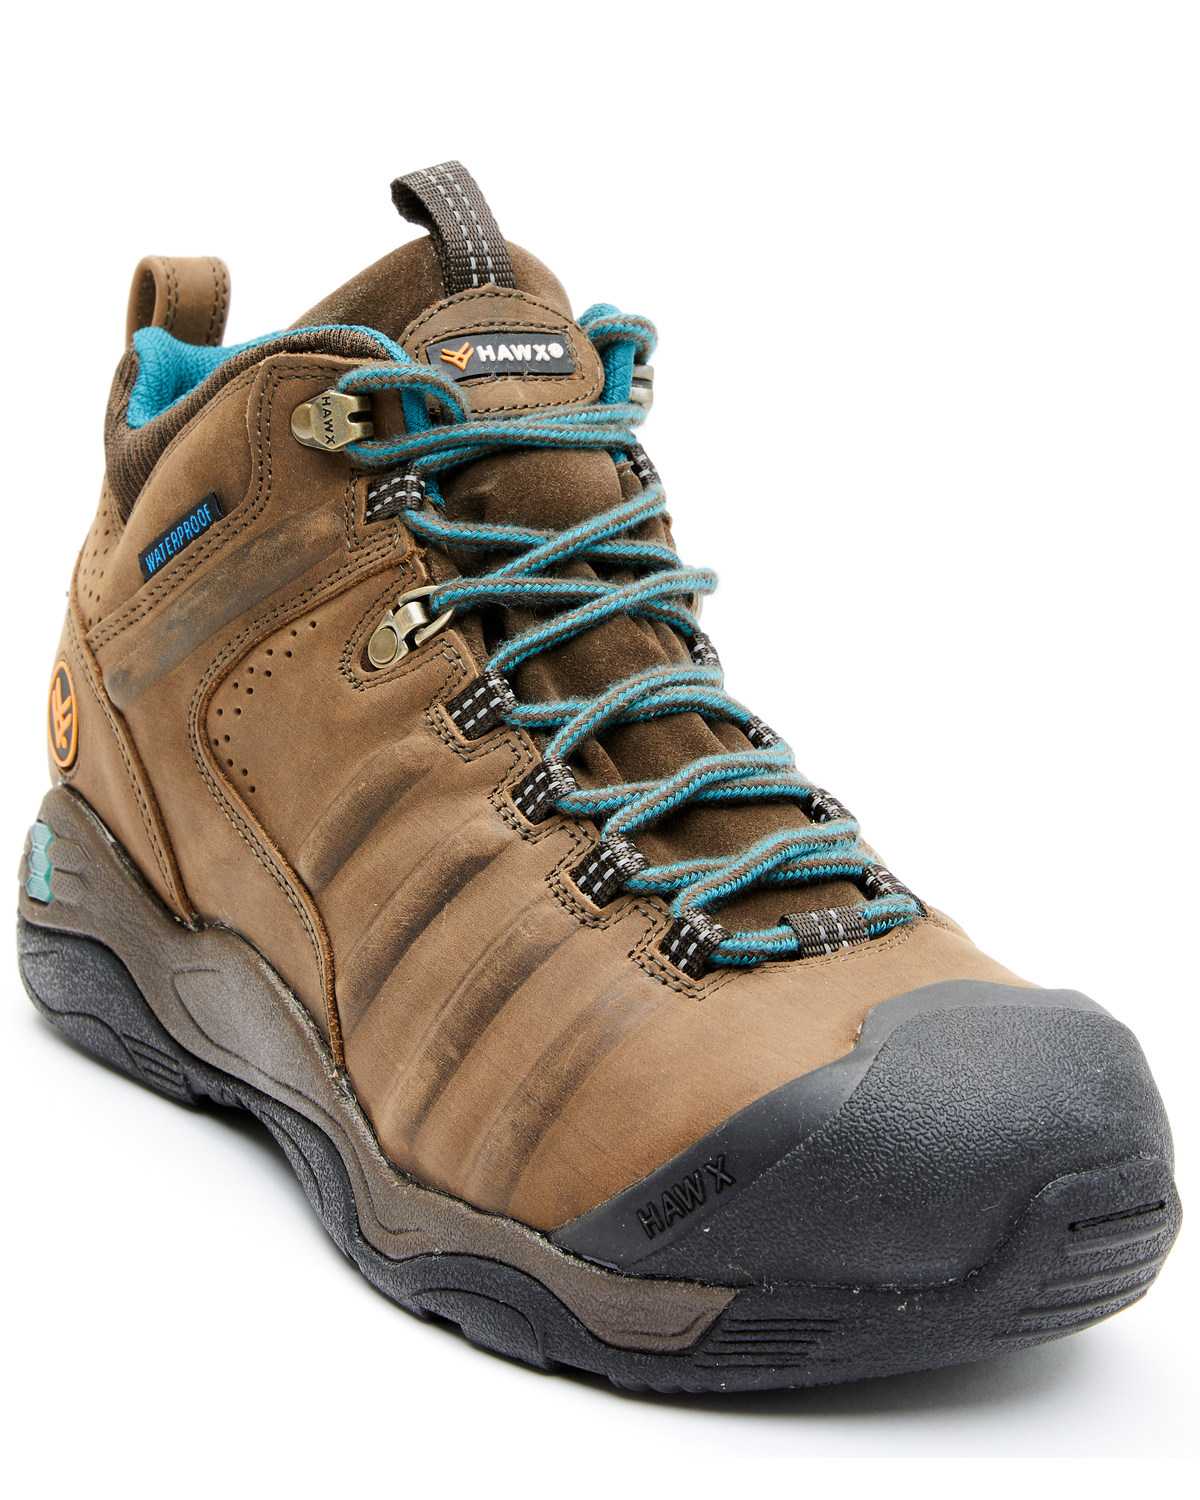 Hawx Men's Axis Waterproof Hiker Boots